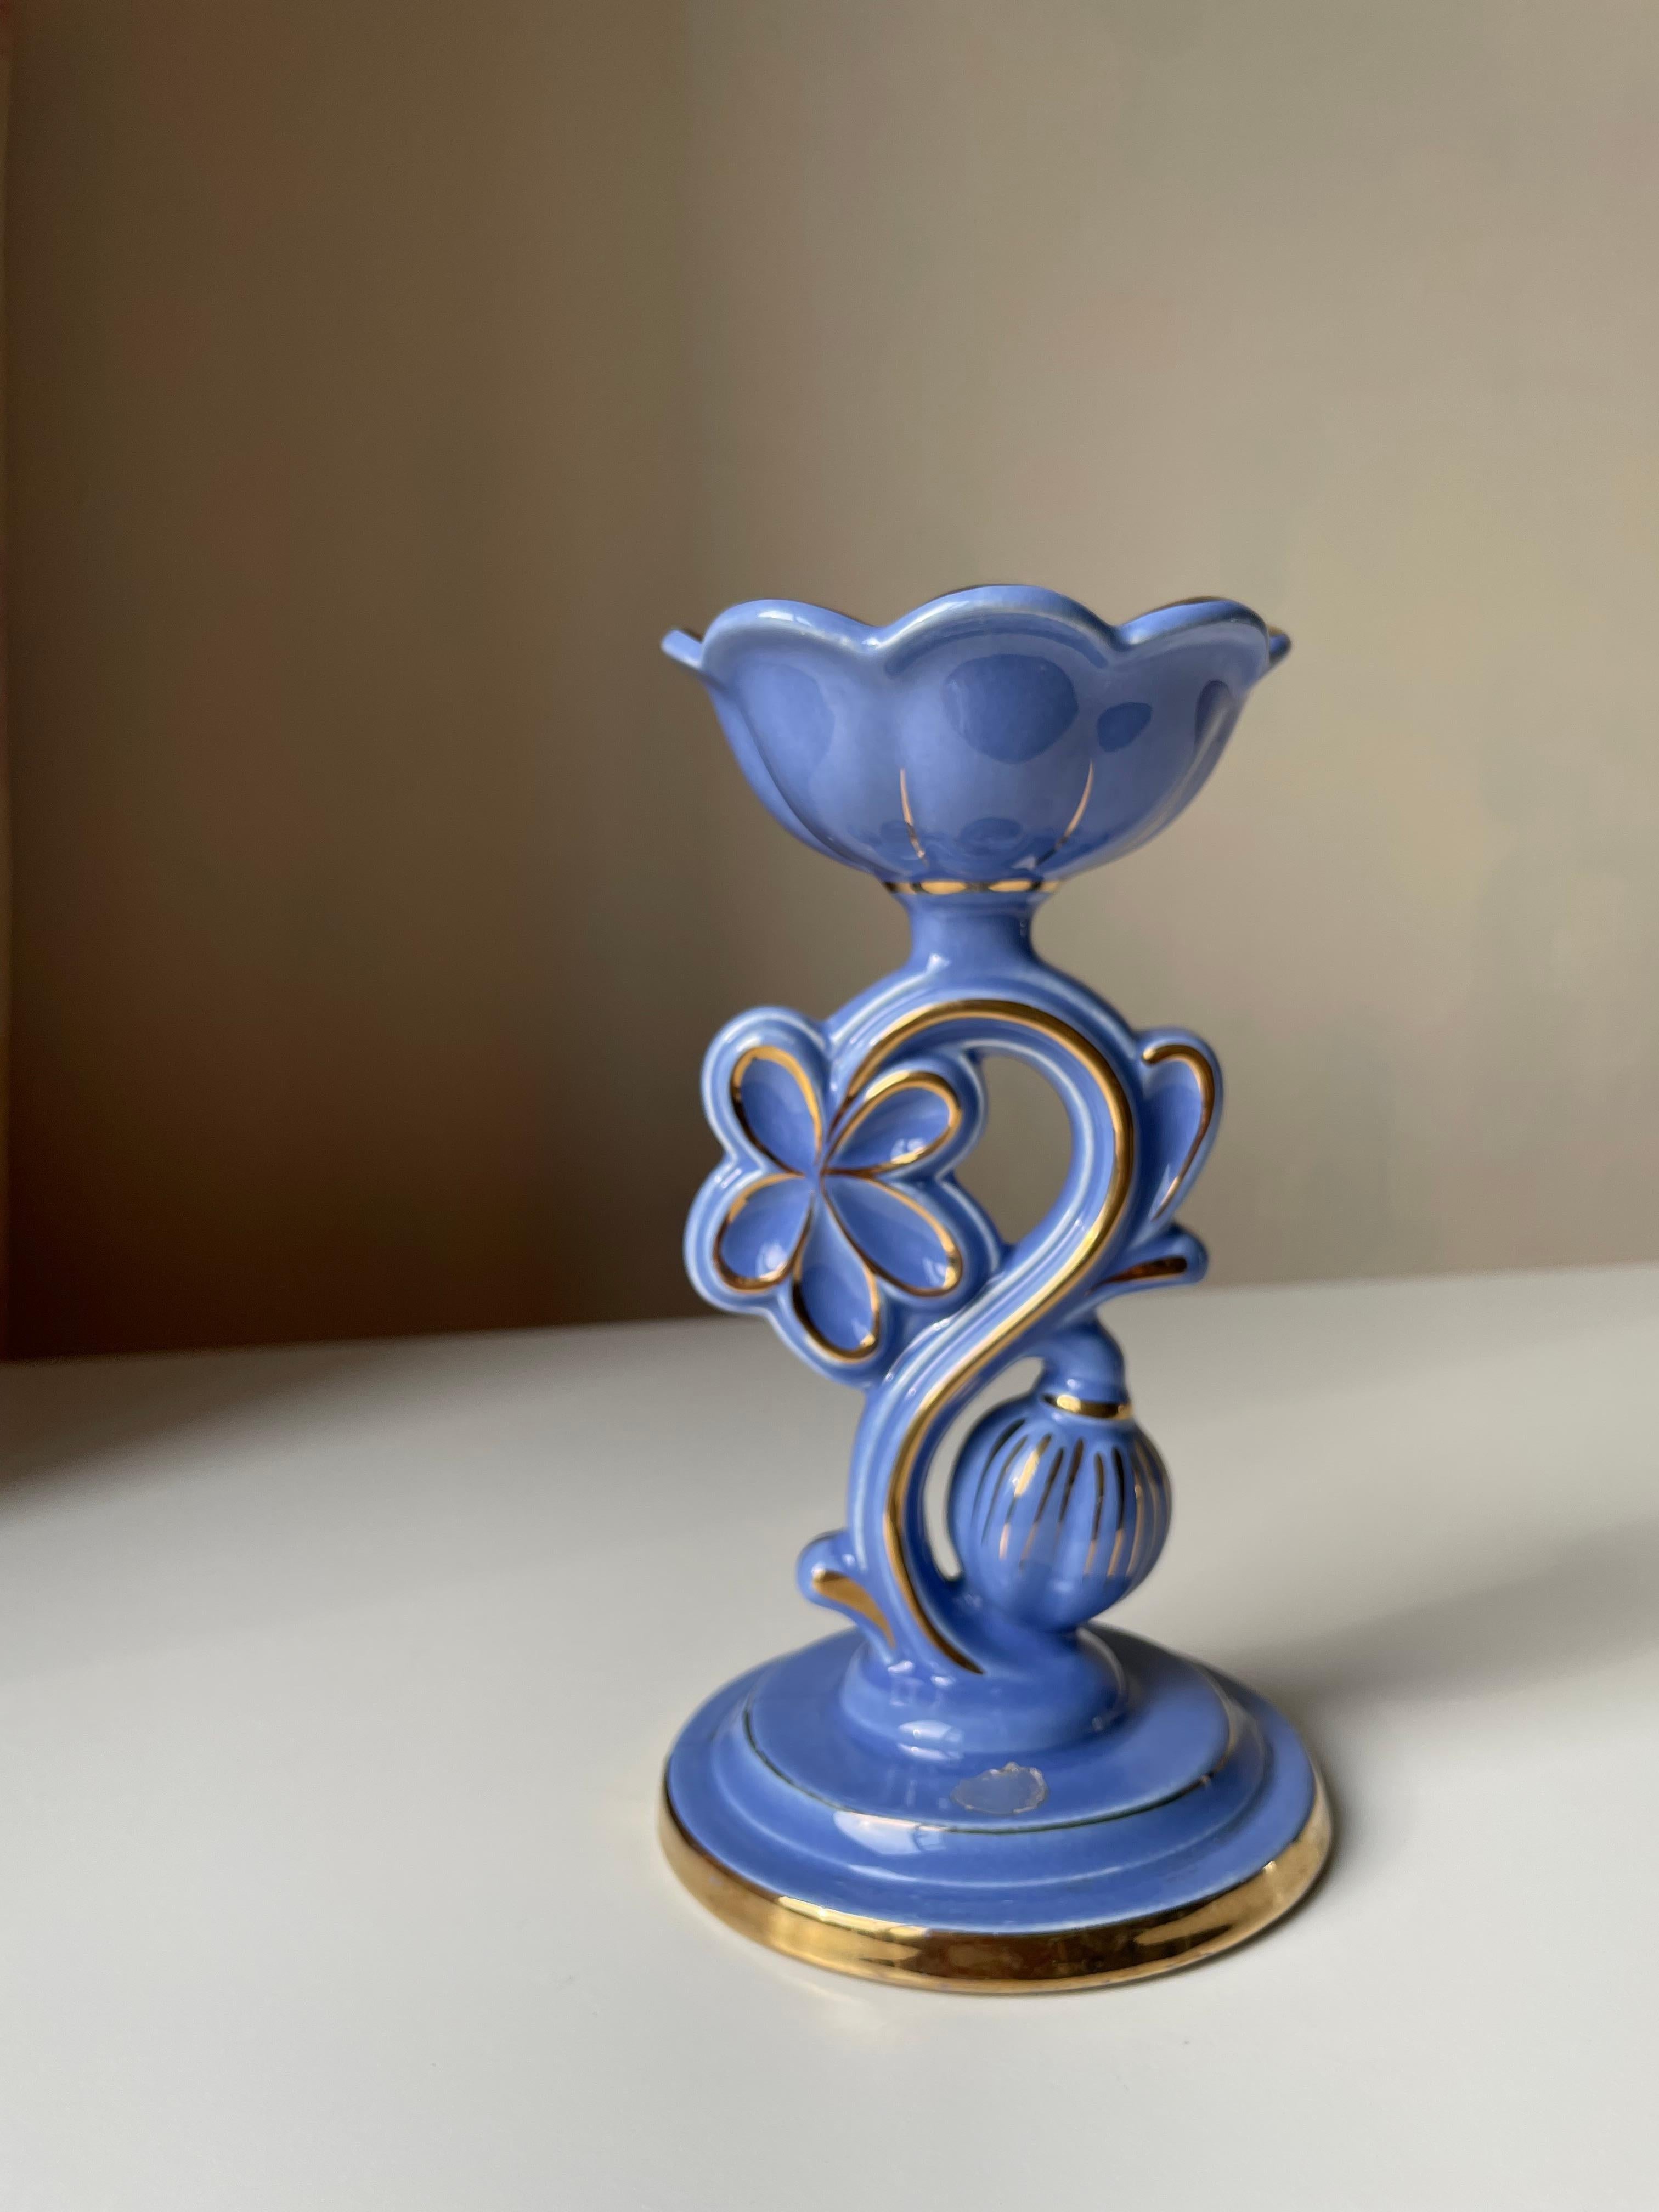 Romantischer Kerzenhalter aus blauem Porzellan im Jugendstil mit leichtem Lila-Ton, goldenen Akzenten und dekorativen Linien. Skulpturaler Blumendekor mit einem Oberteil, das einer offenen Blume ähnelt, in die die Kerze gestellt wird. Originales